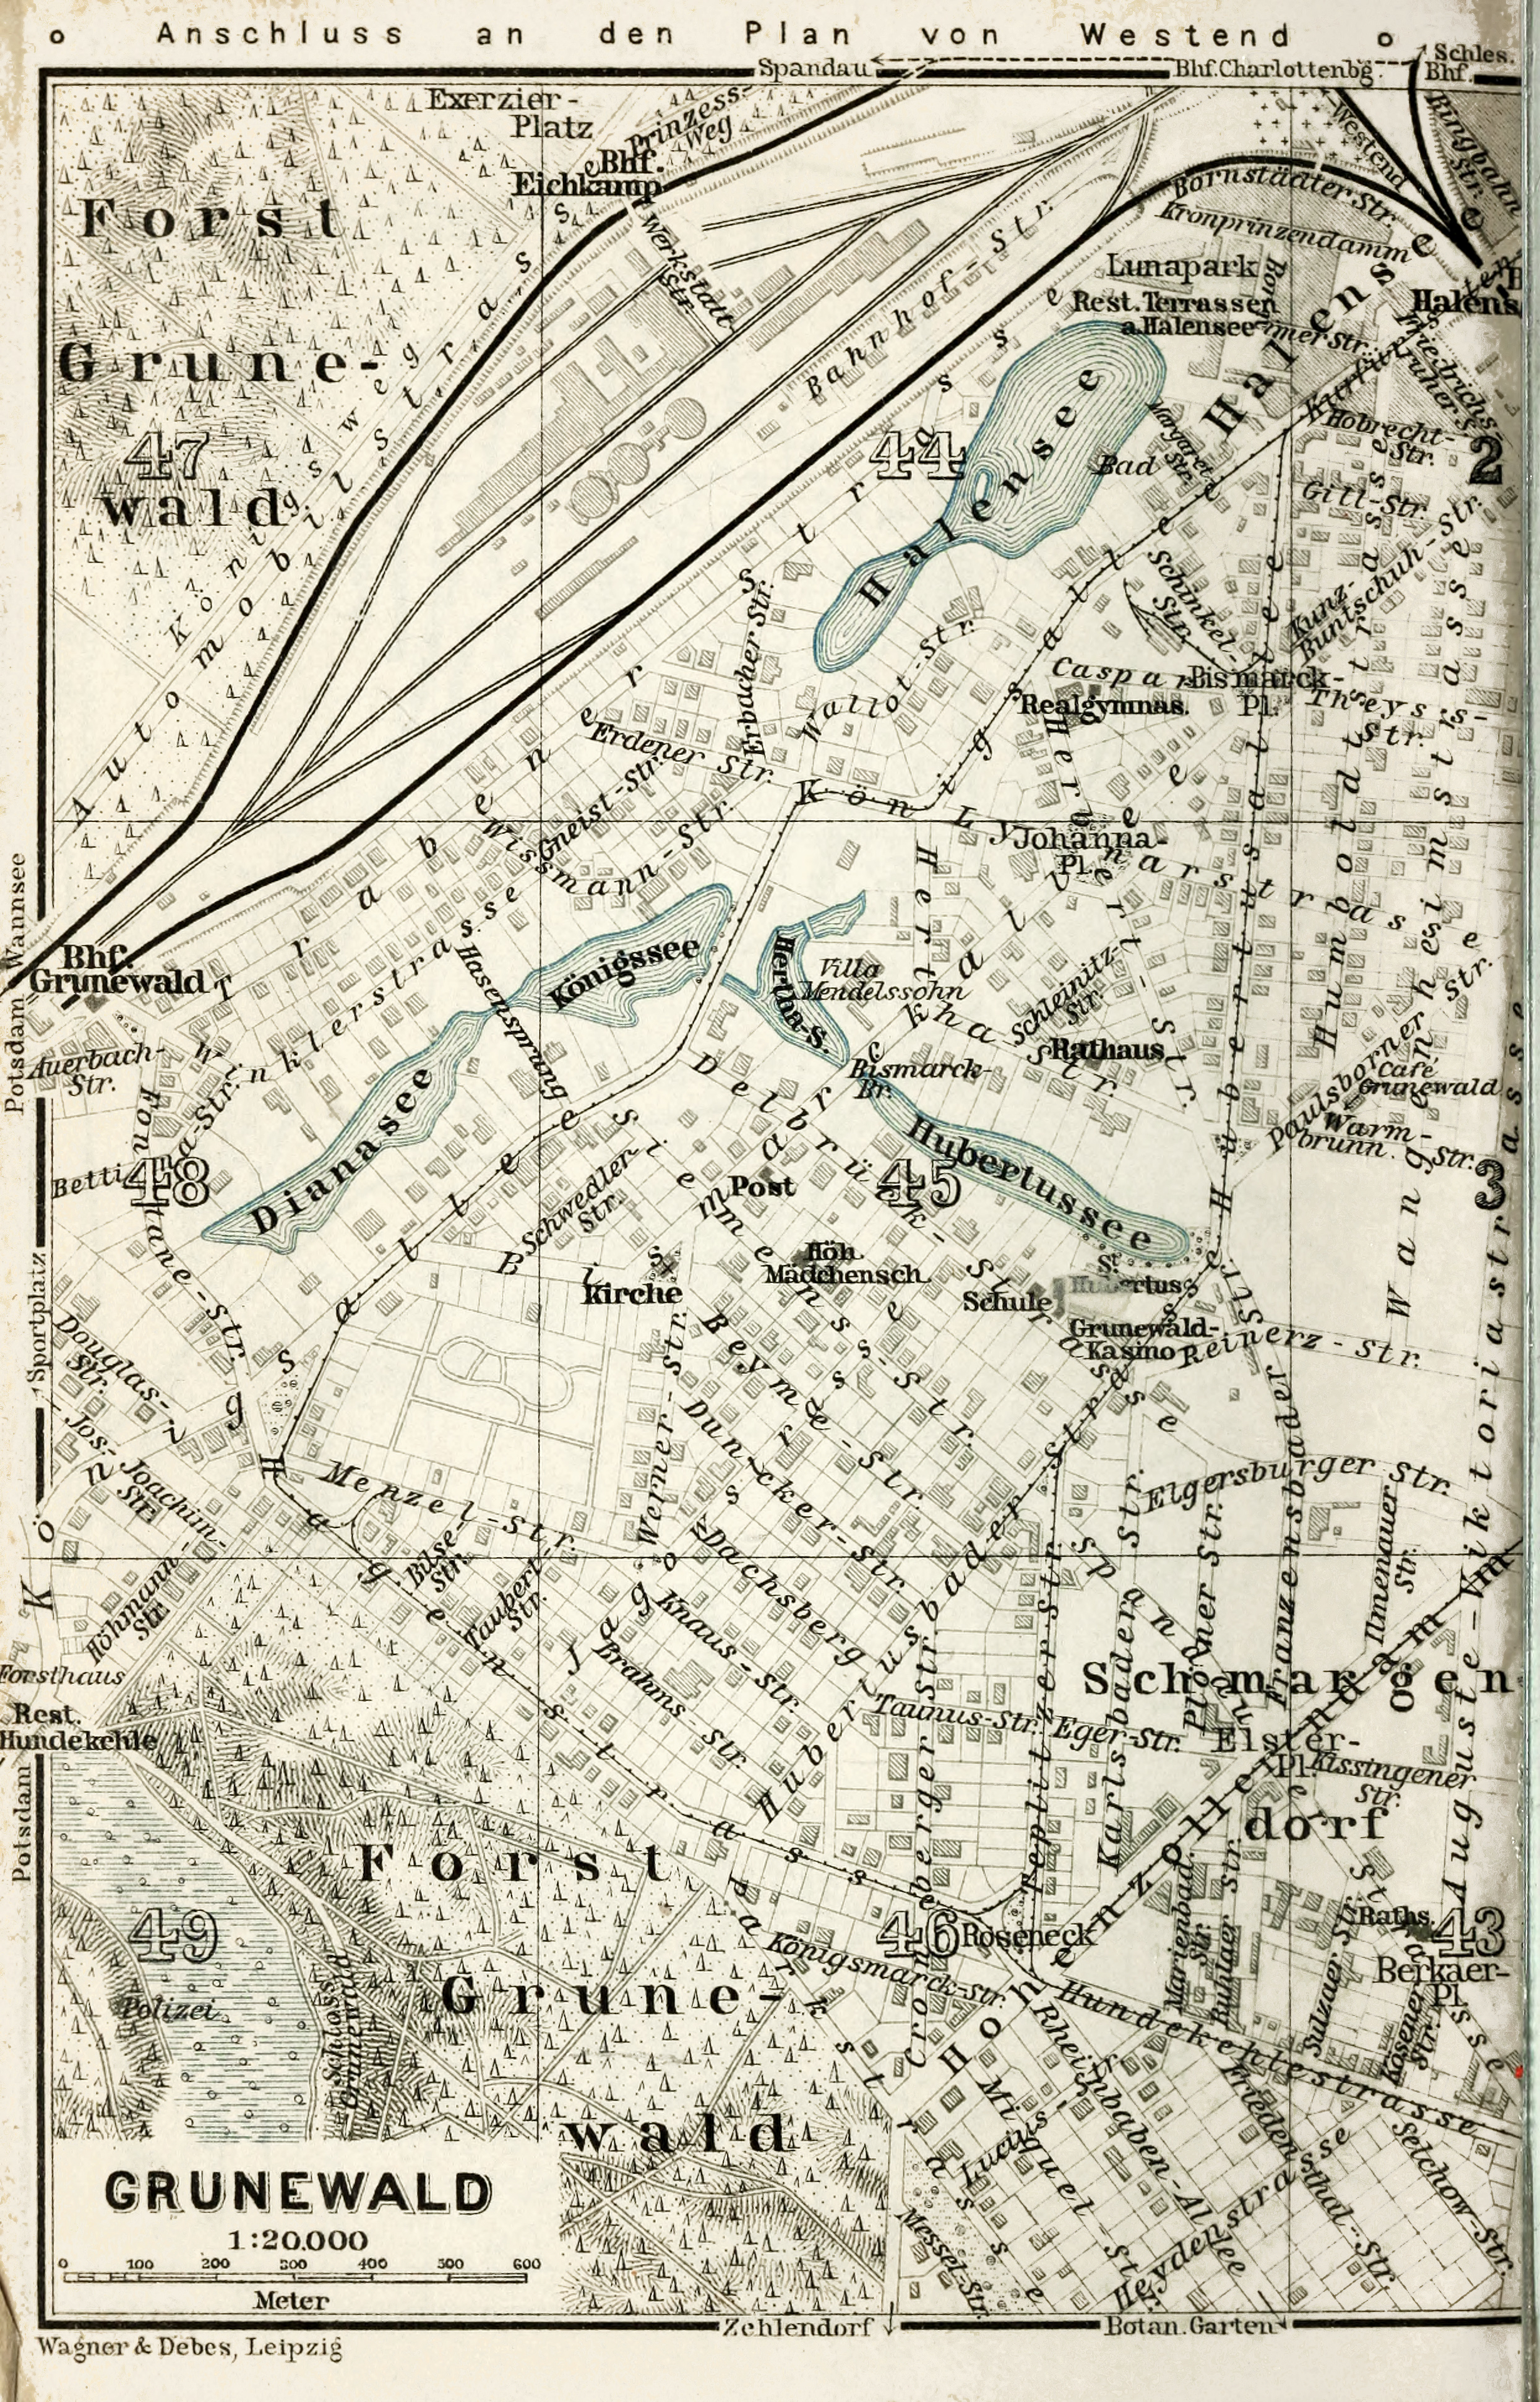 Baedeker, Plan von Grunewald, 1914